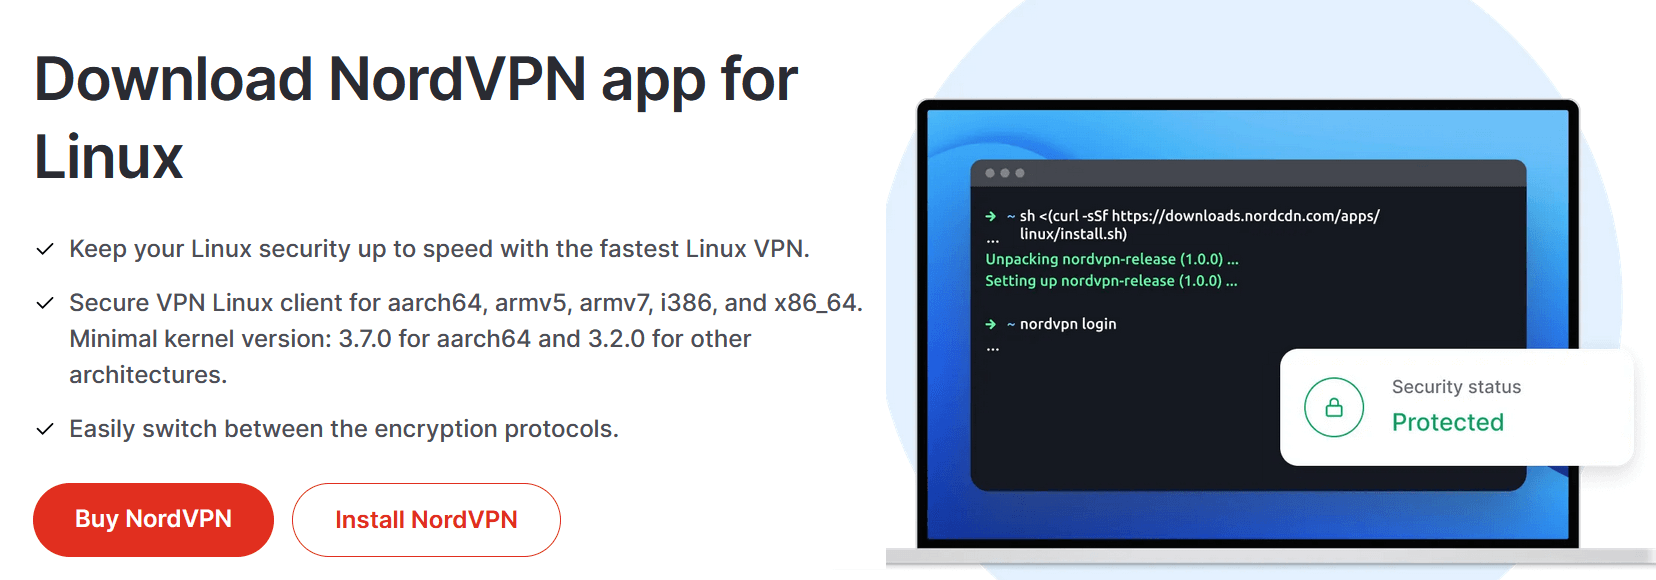 NordVPN For Linux